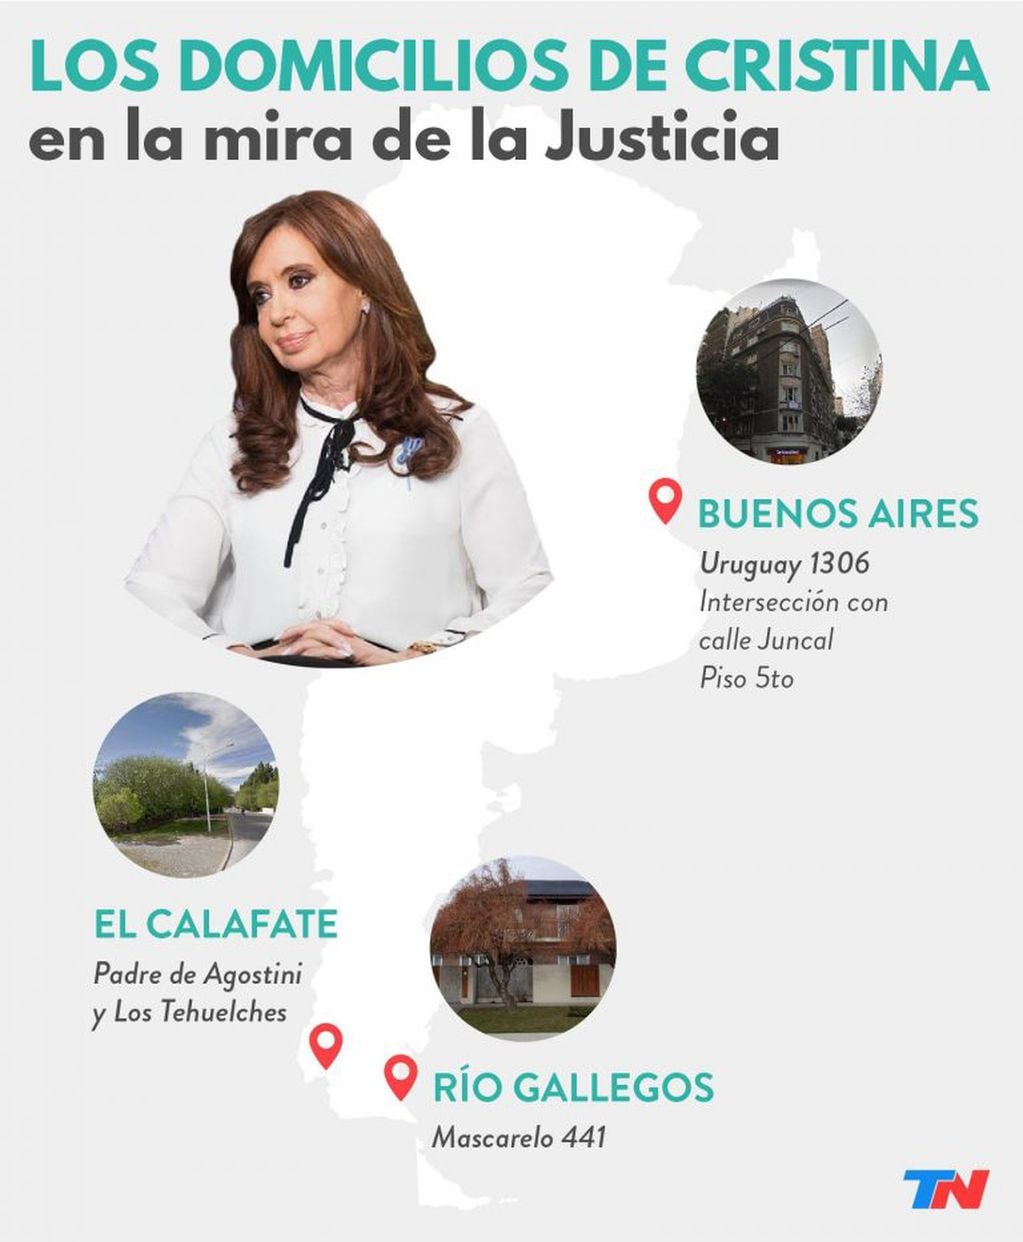 Las propiedades de Cristina Kirchner (crédito: TN).